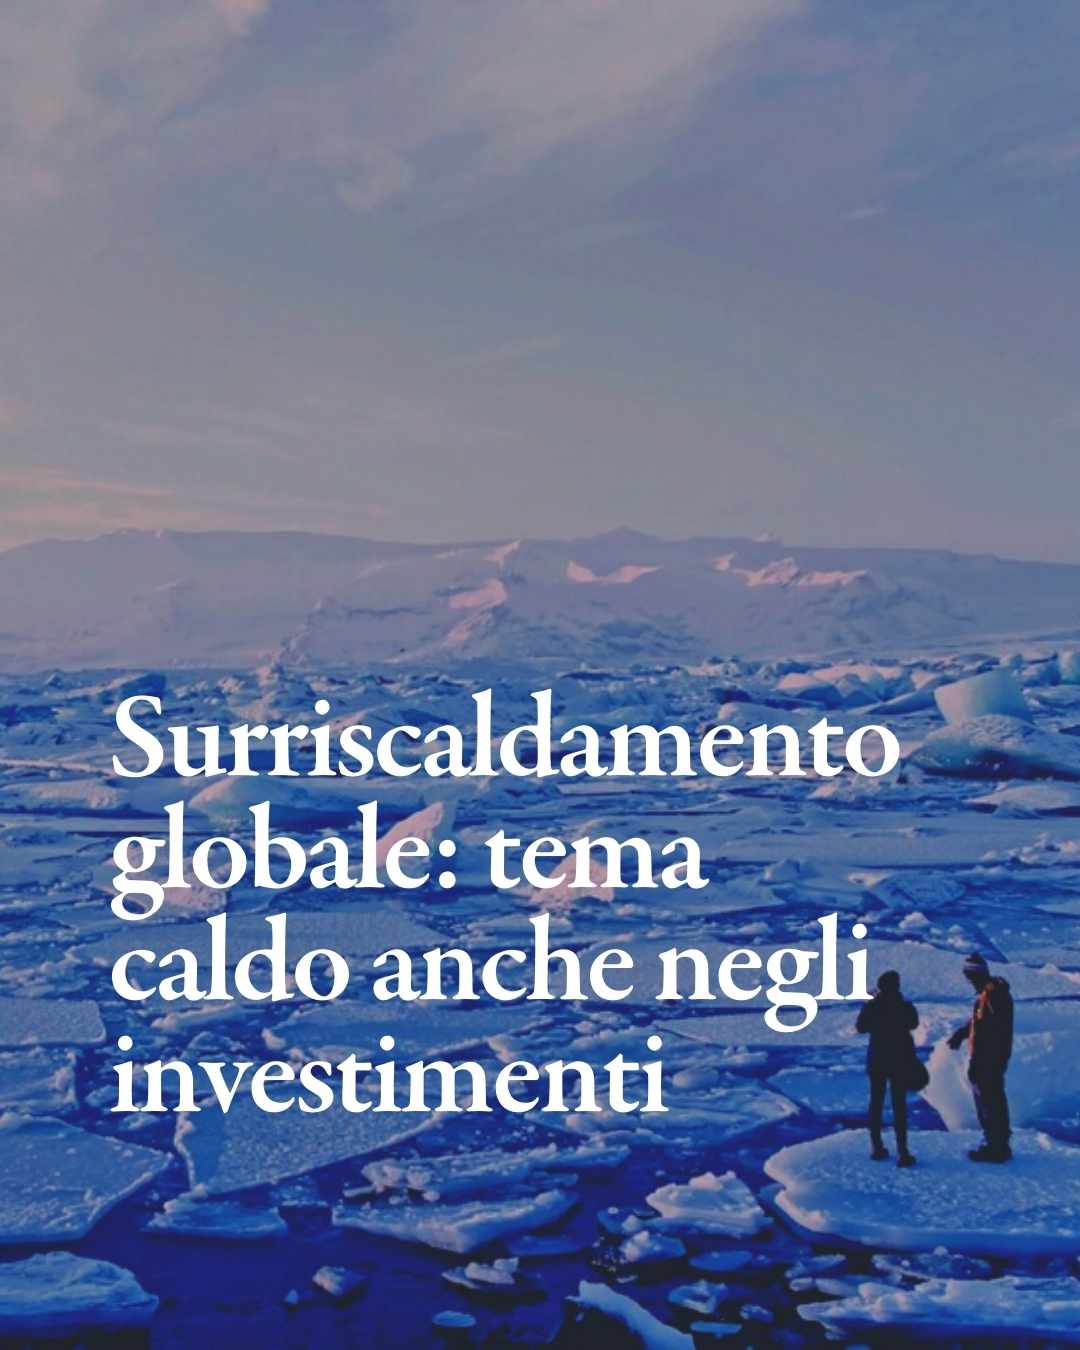 Surriscaldamento globale: un tema caldo anche negli investimenti